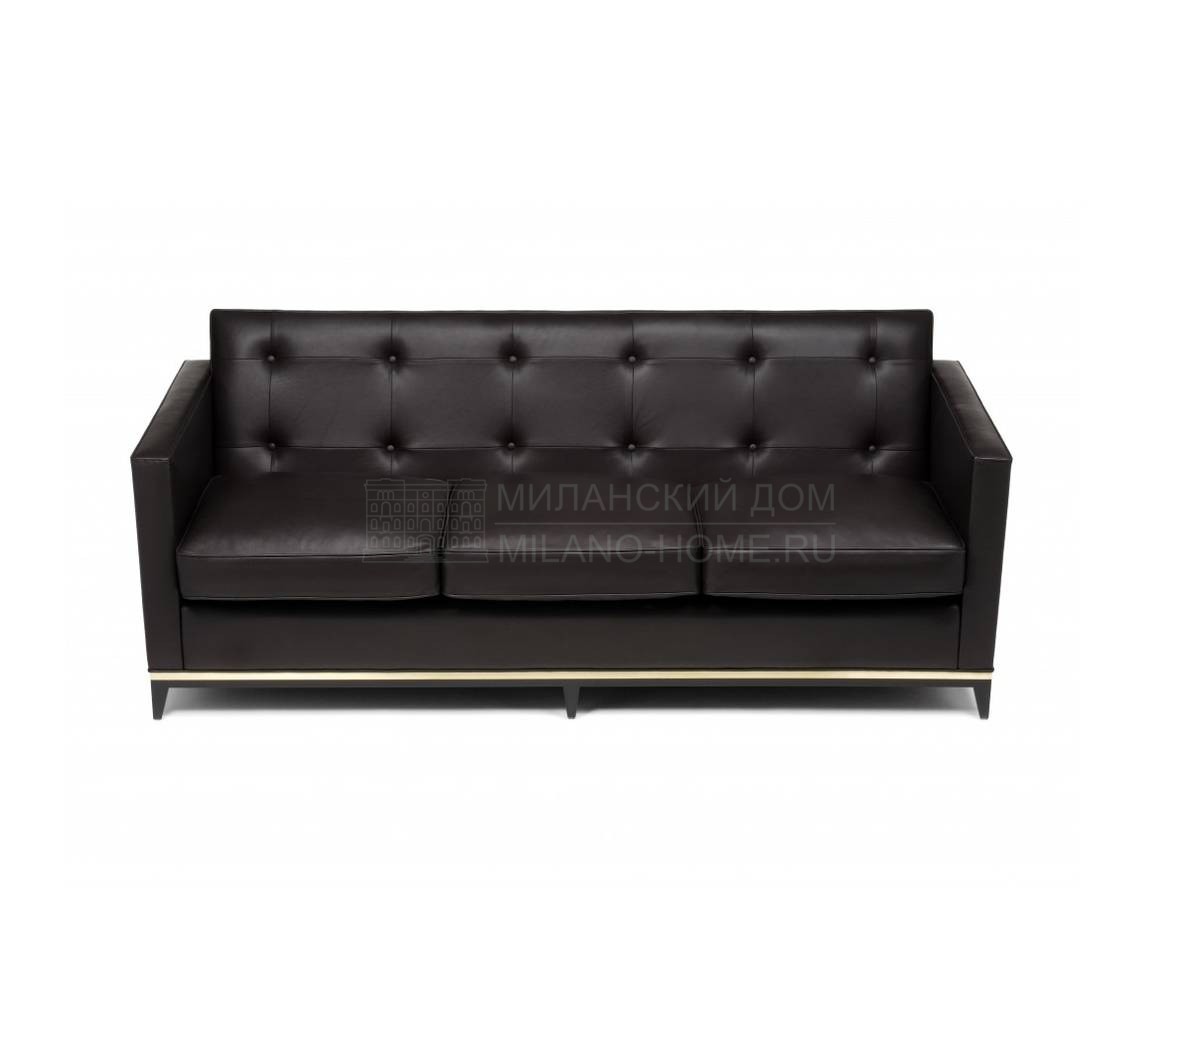 Прямой диван Gamine Three Seat Sofa из Великобритании фабрики AMY SOMERVILLE